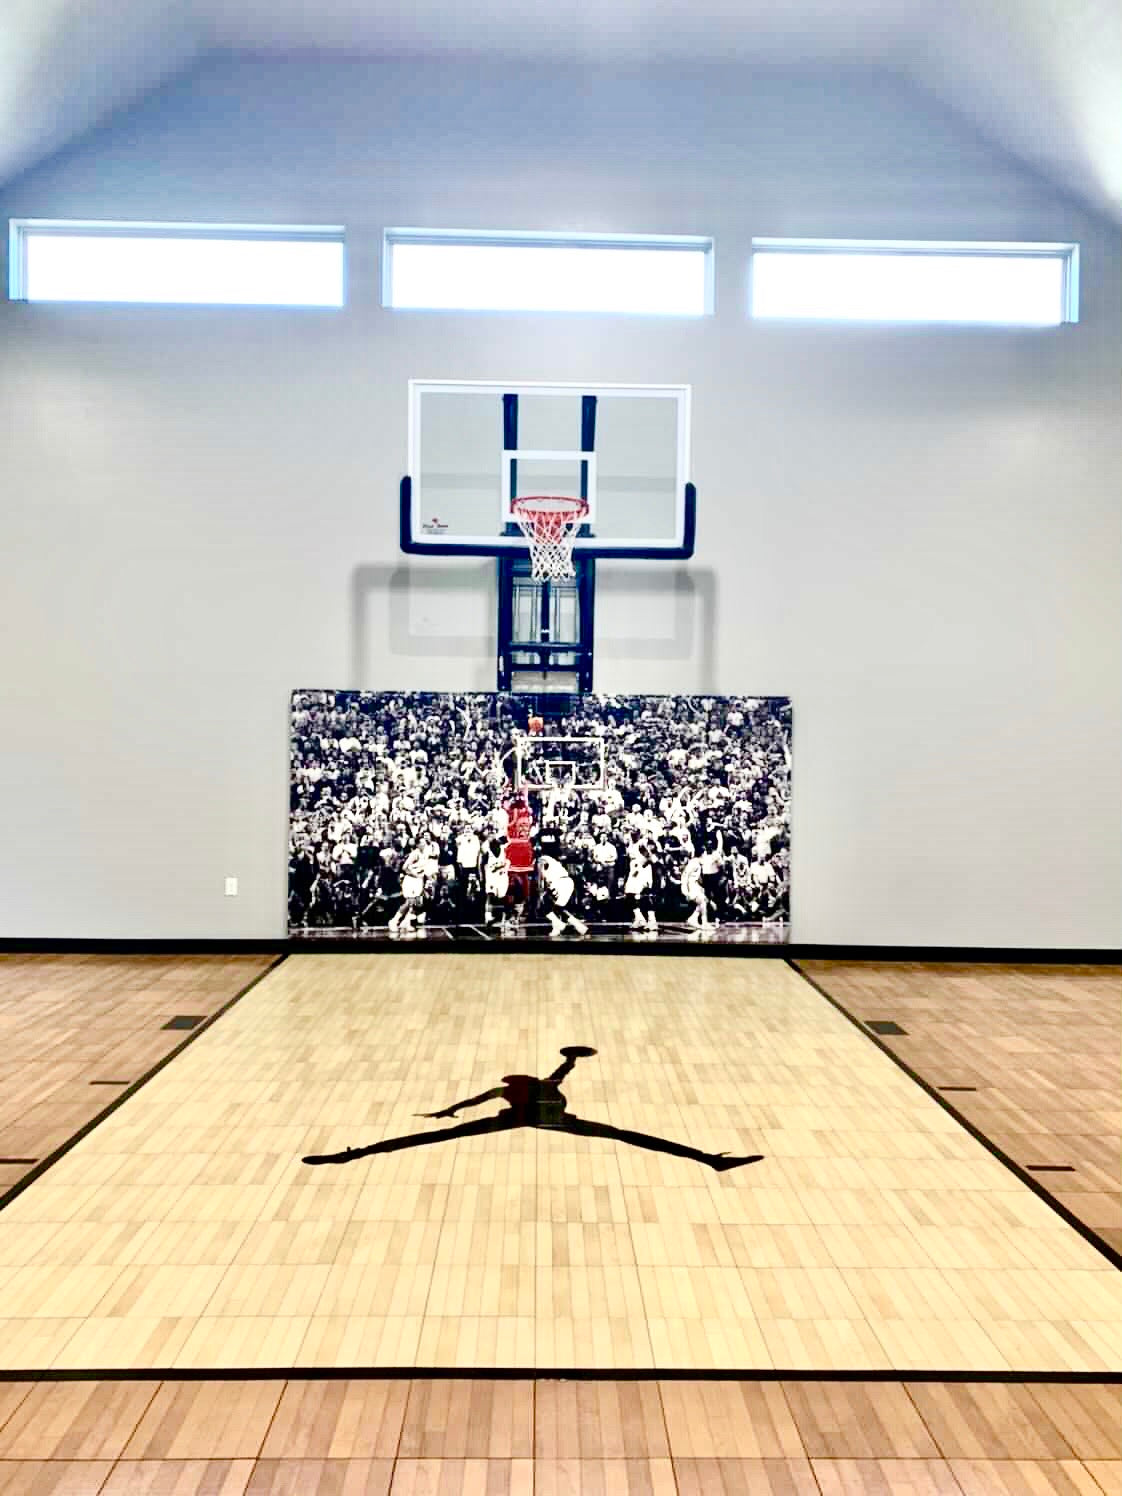 Basketball Home Court Wall Pads Michael Jordan, gym wall pads, printed gymnasium pads, logo gym wall pads, protective wall pads, protective gym pads 